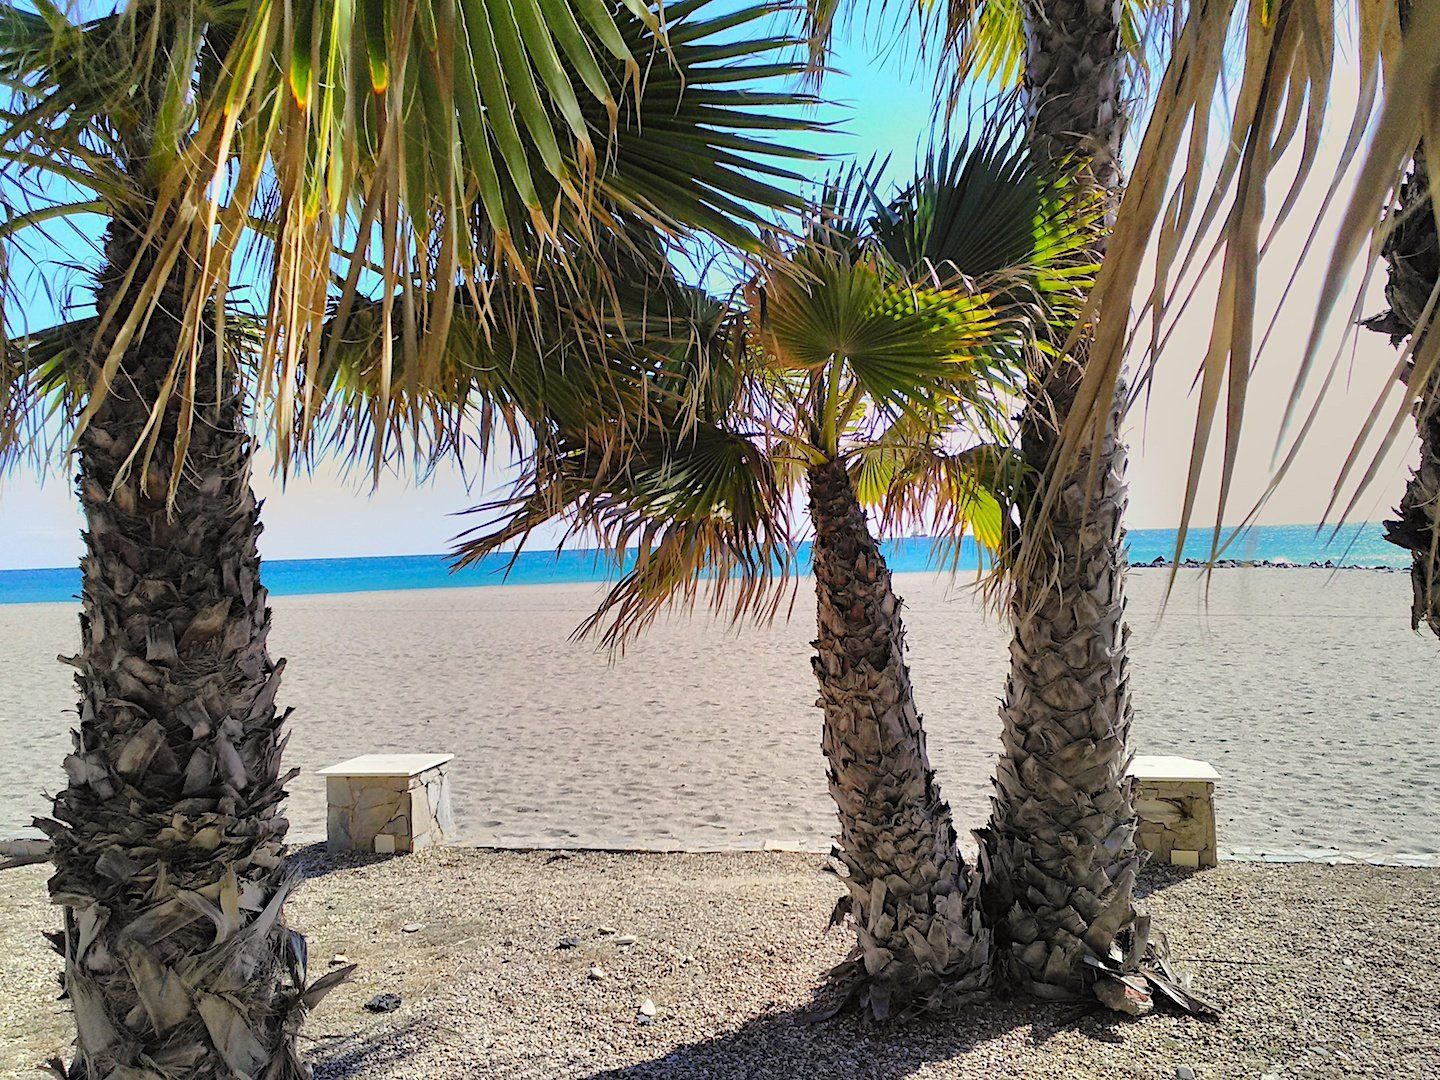 un grupo de tres palmeras y la playa de arena blanca más allá